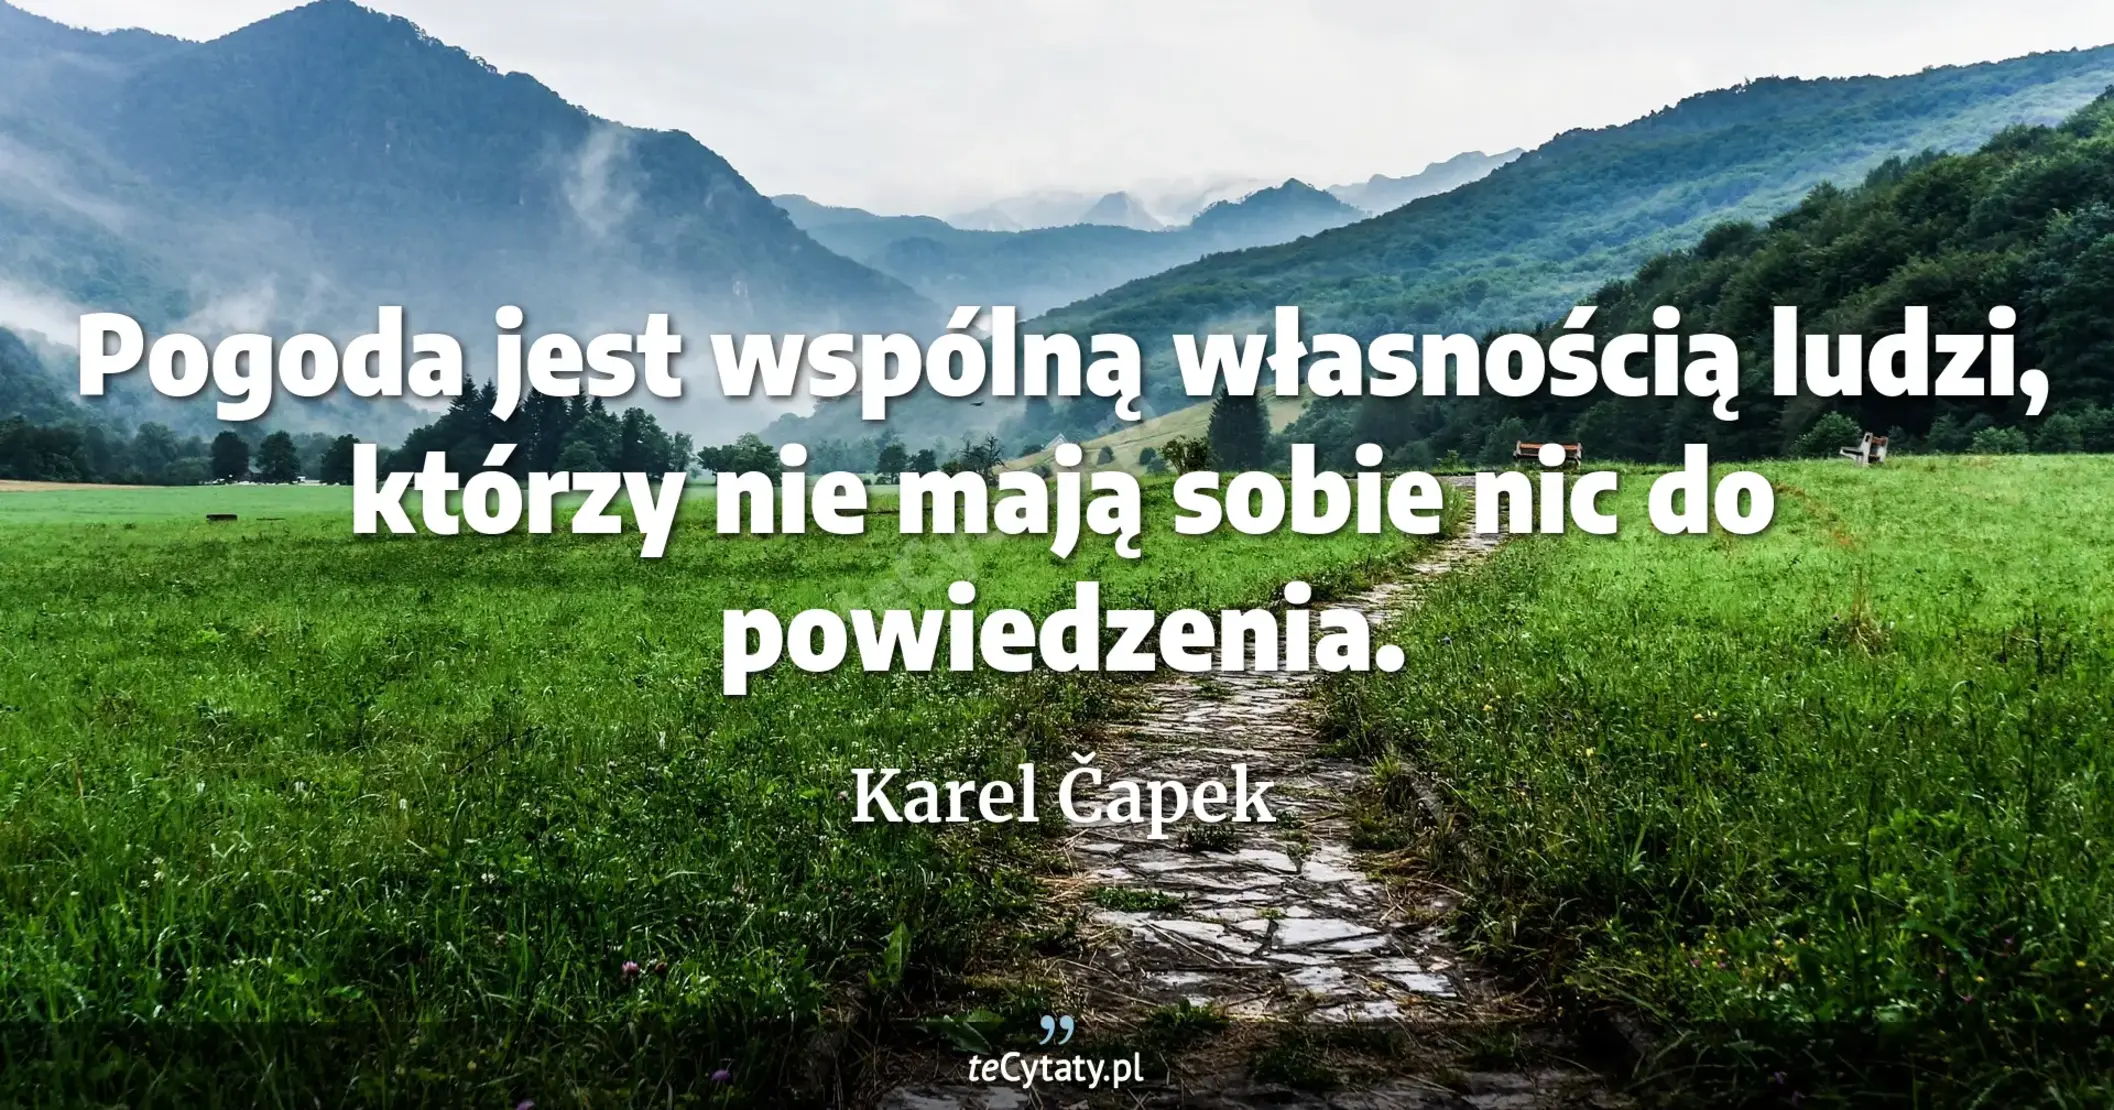 Pogoda jest wspólną własnością ludzi, którzy nie mają sobie nic do powiedzenia. - Karel Čapek